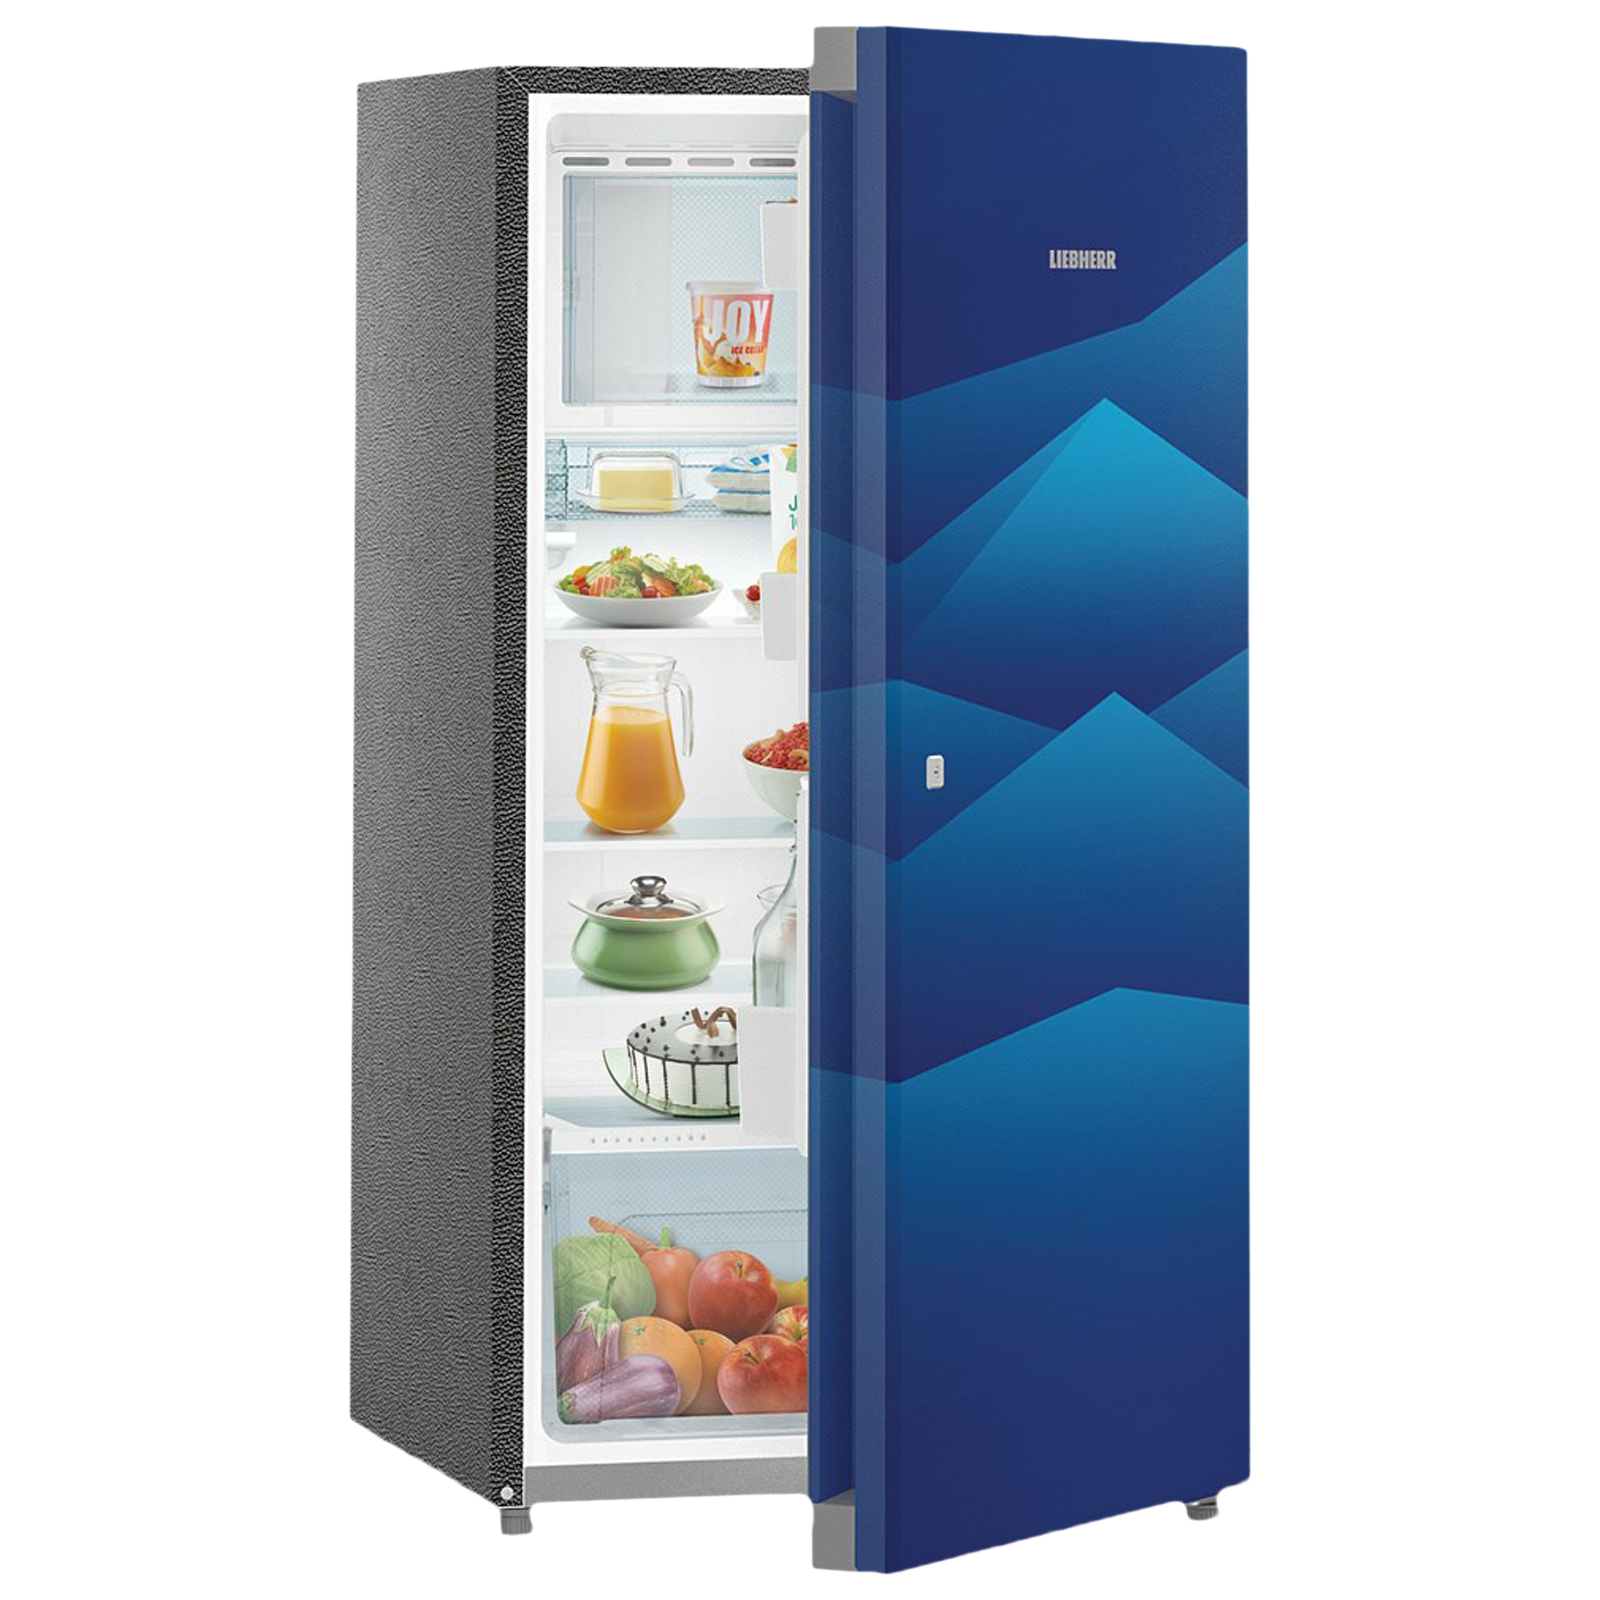 Buy Liebherr 220 Litres 4 Star Direct Cool Single Door Refrigerator